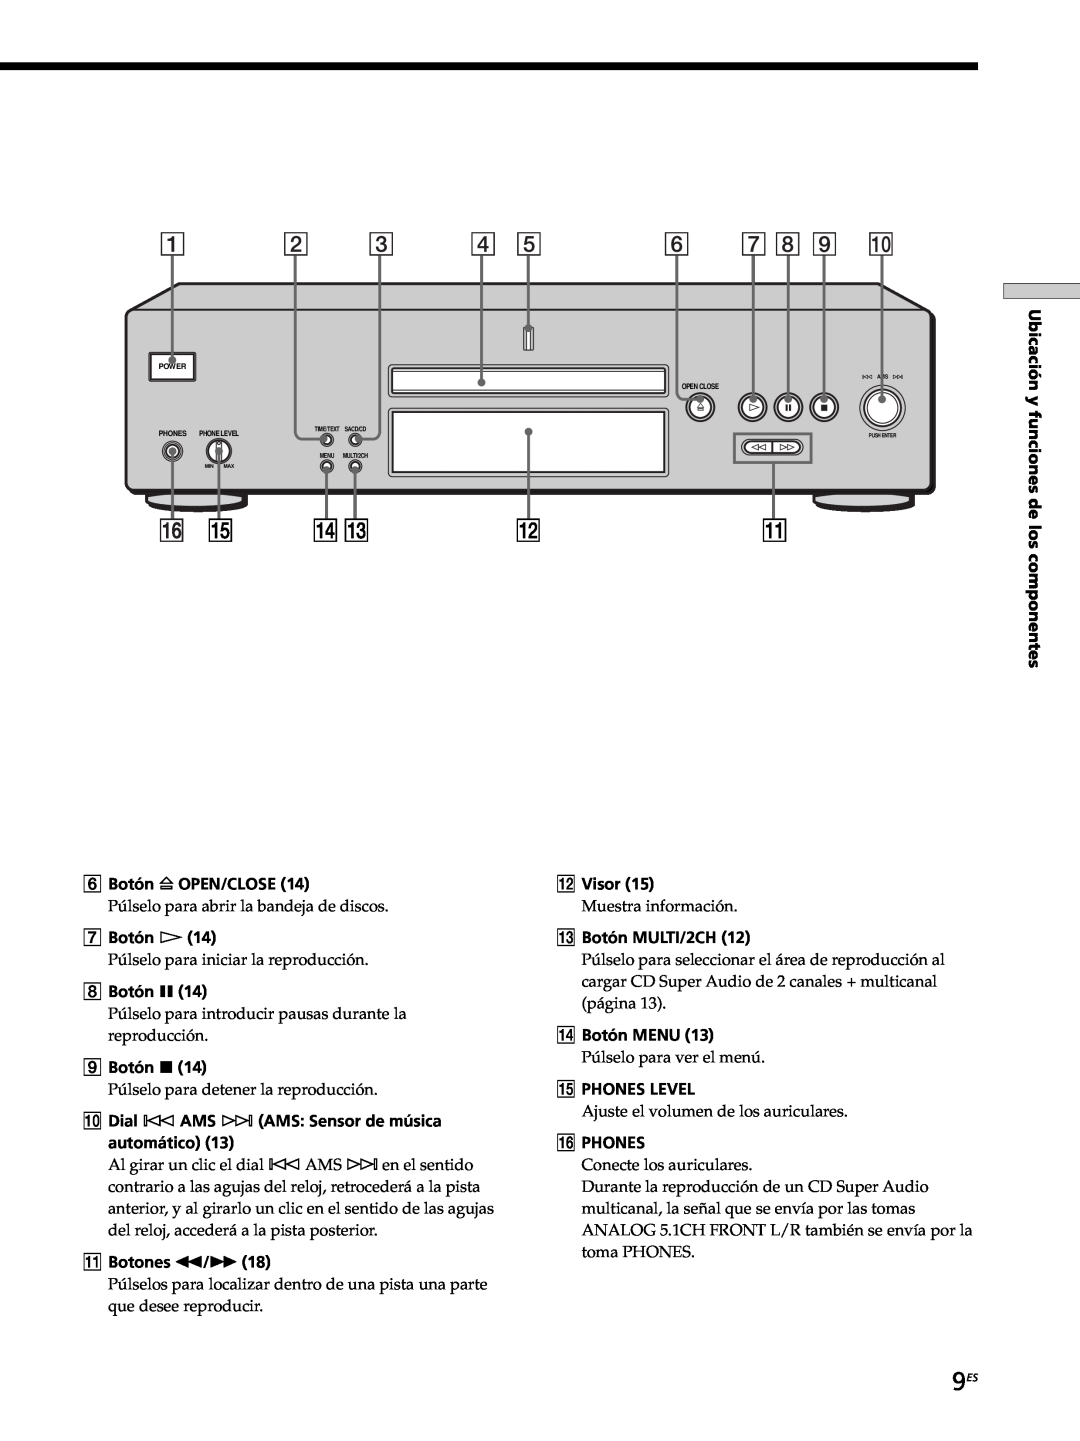 Sony SCD-XB770 operating instructions Ubicación y funciones de los componentes 